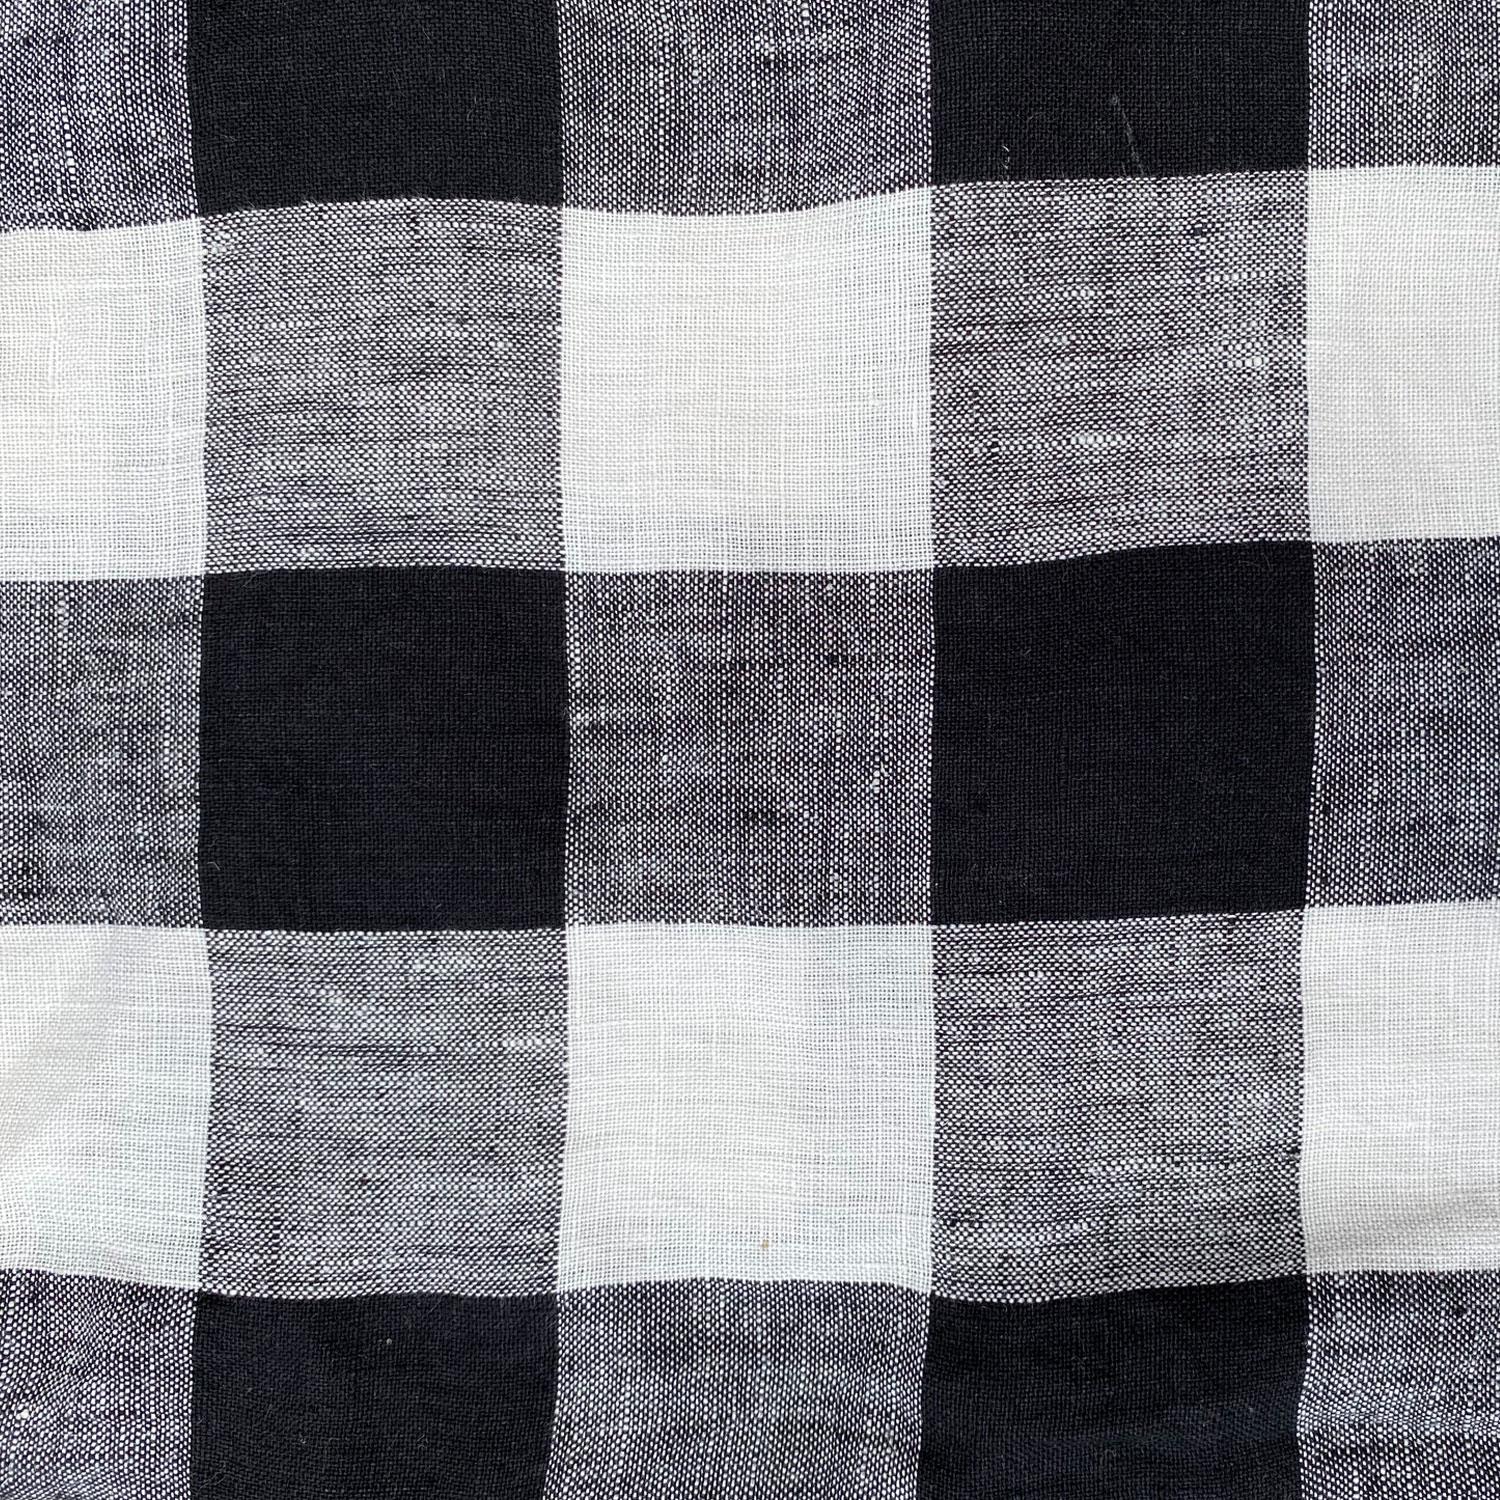 Black &amp; White Gingham Linen Flat Sheet